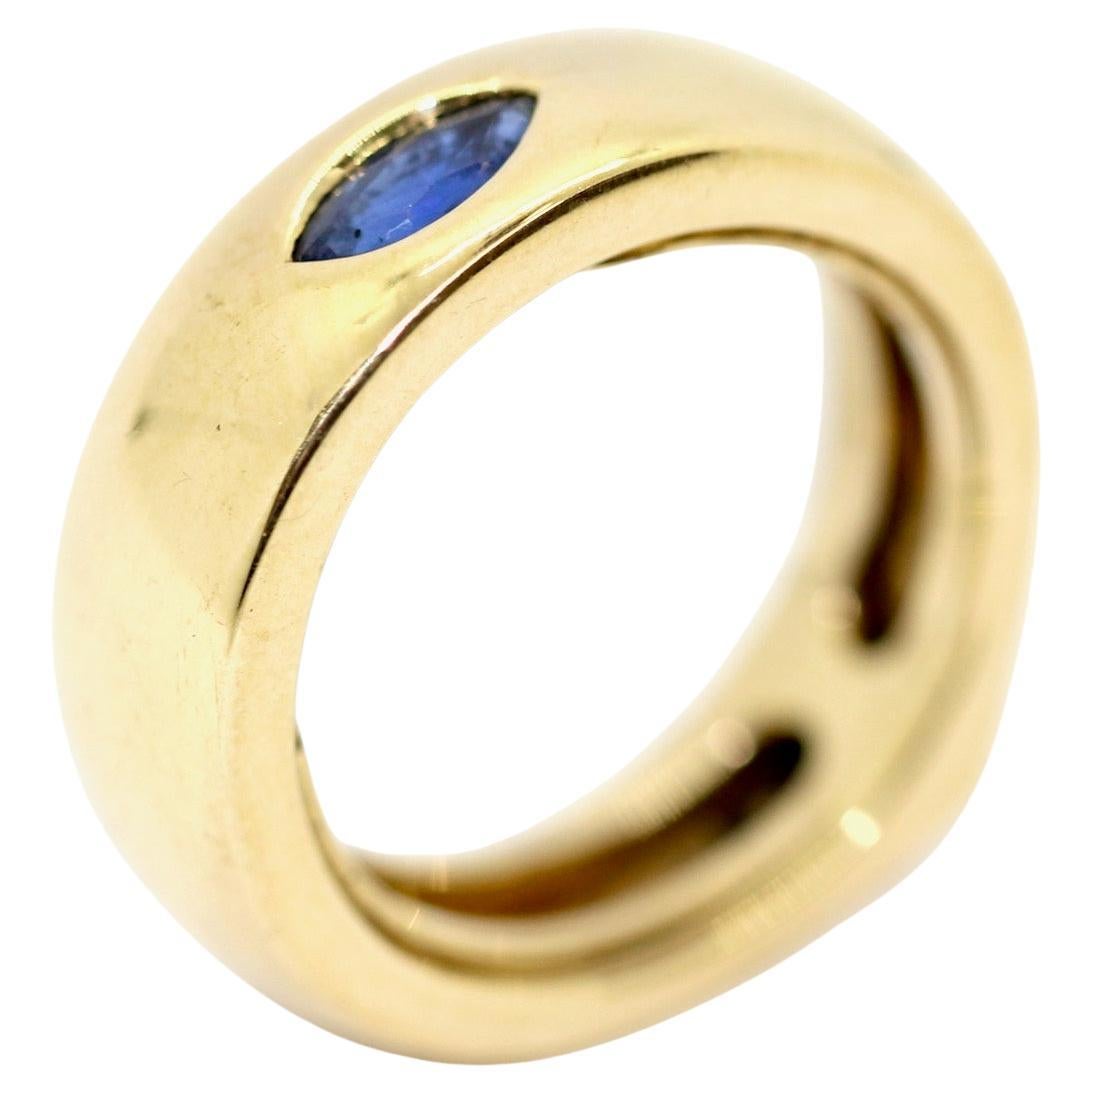 Designer-Ring von Kat Florence, 18 Karat Gelbgold mit blauem Marquise-Saphir